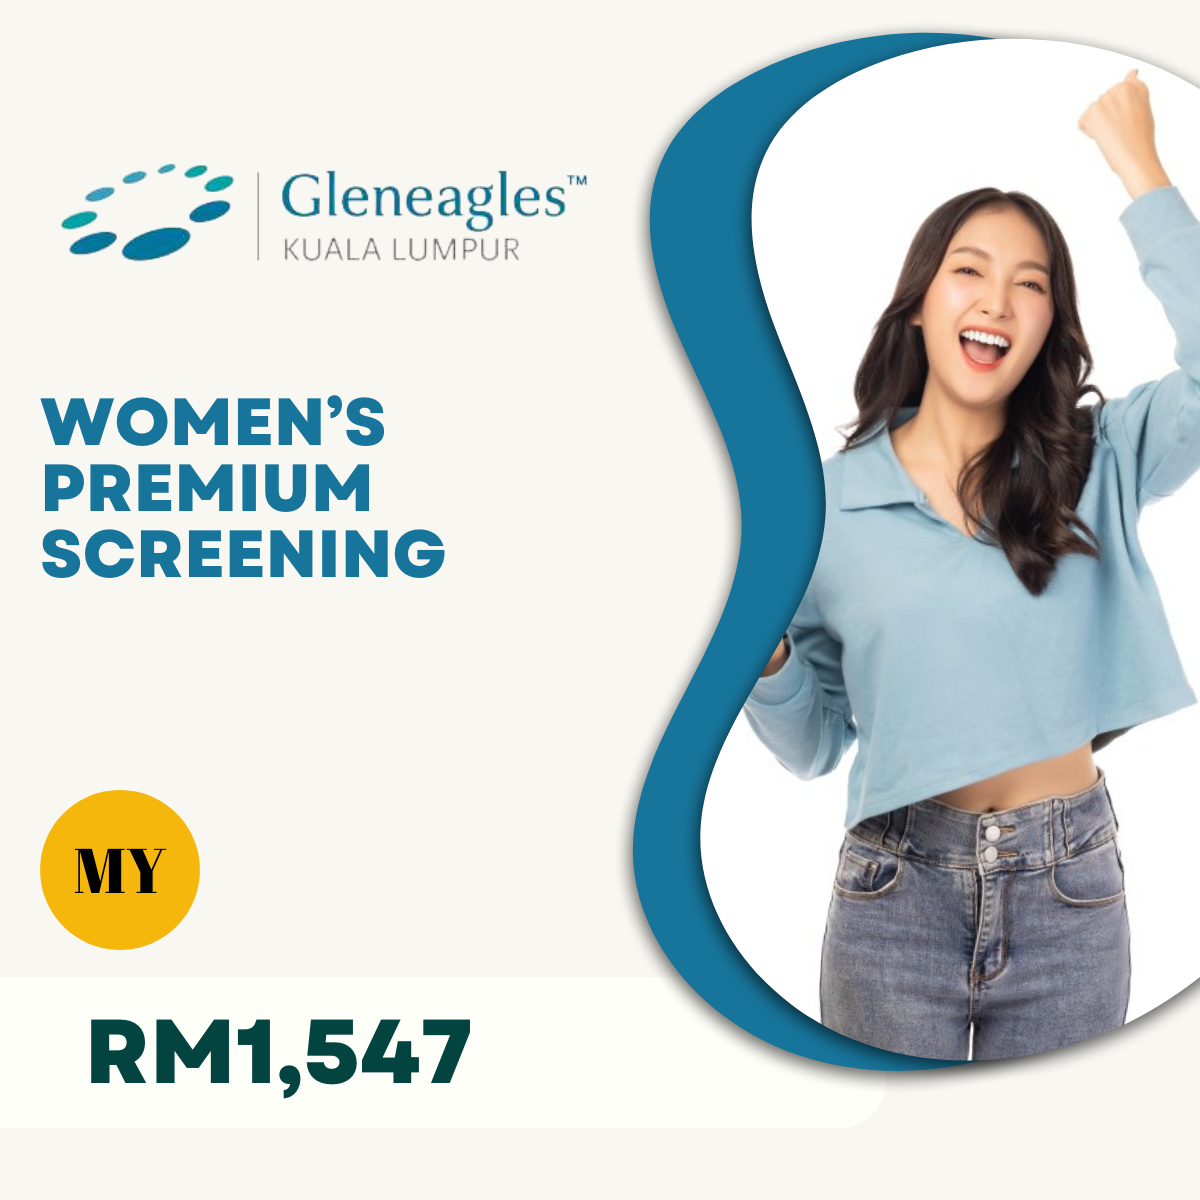 Gleneagles (KL) Women’s Premium Plus Screening